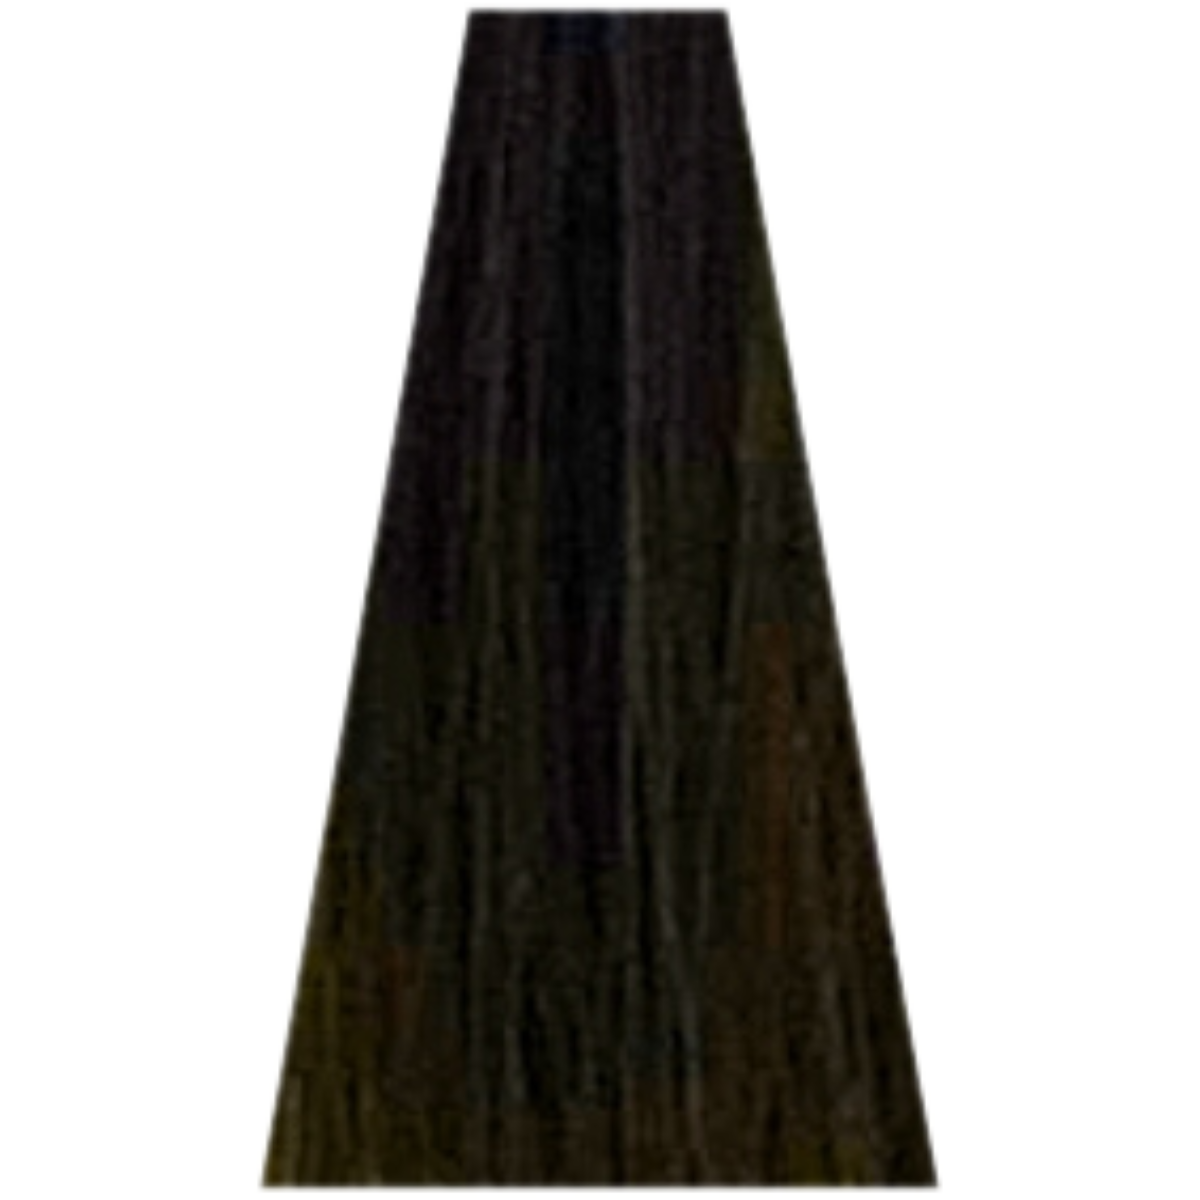 צבע שיער 6.01 ASH / MATTE דיה רישס לוריאל DIA RICHESSE LOREAL צבע שטיפה לשיער